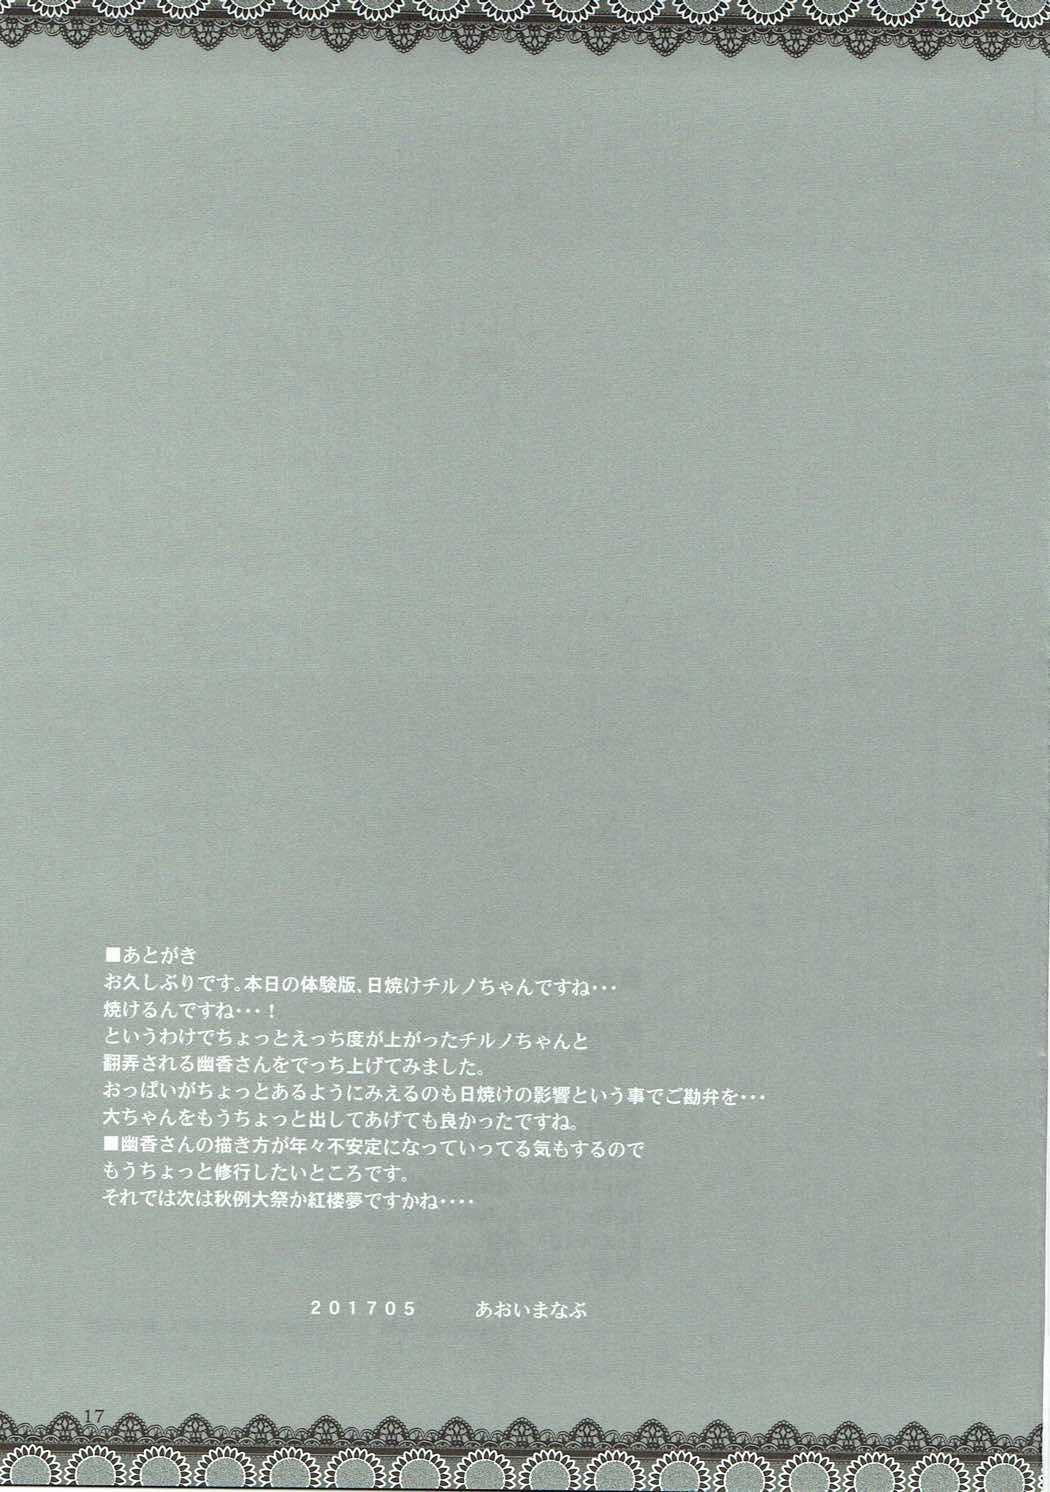 (例大祭14) [BlueMage (あおいまなぶ)] 氷夏 (東方Project)